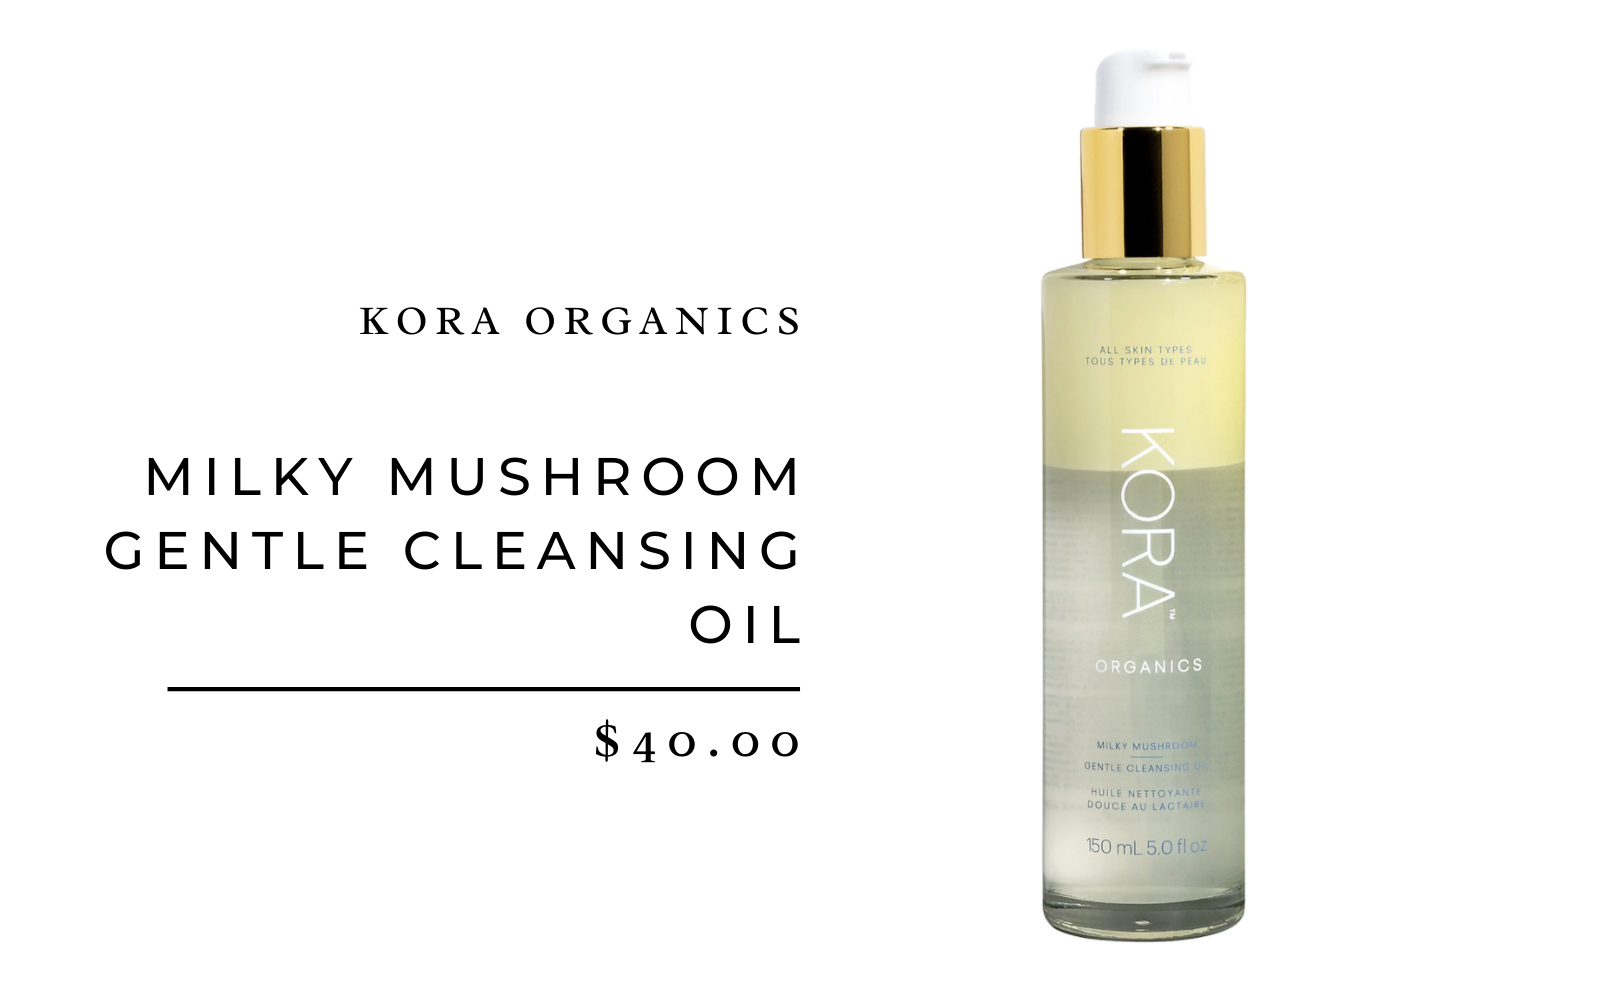 Kora Organics Milky Mushroom Gentle Cleansing Oil